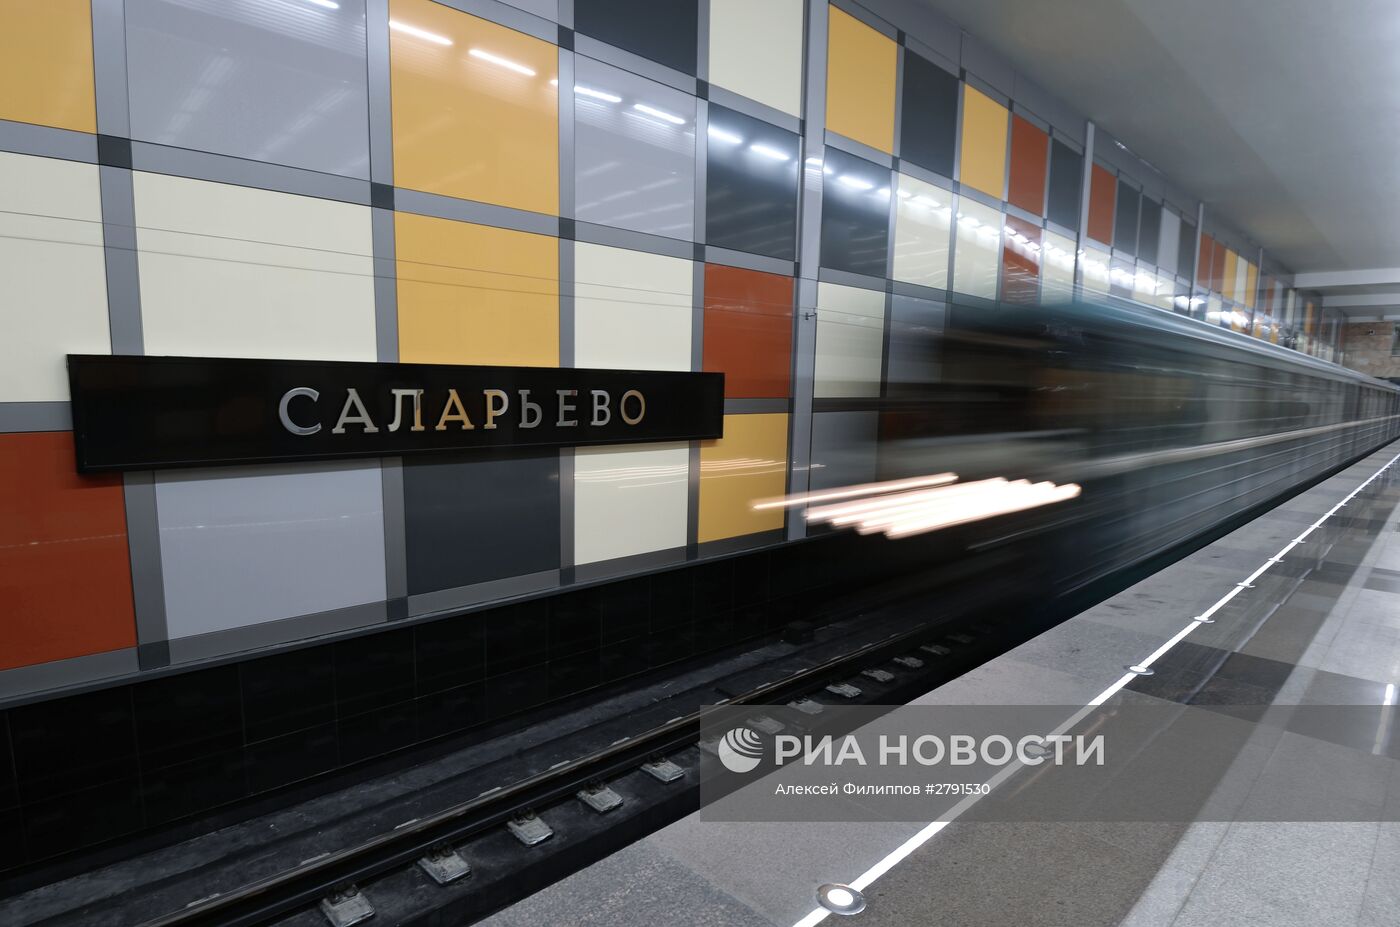 Открытие станции метро Саларьево